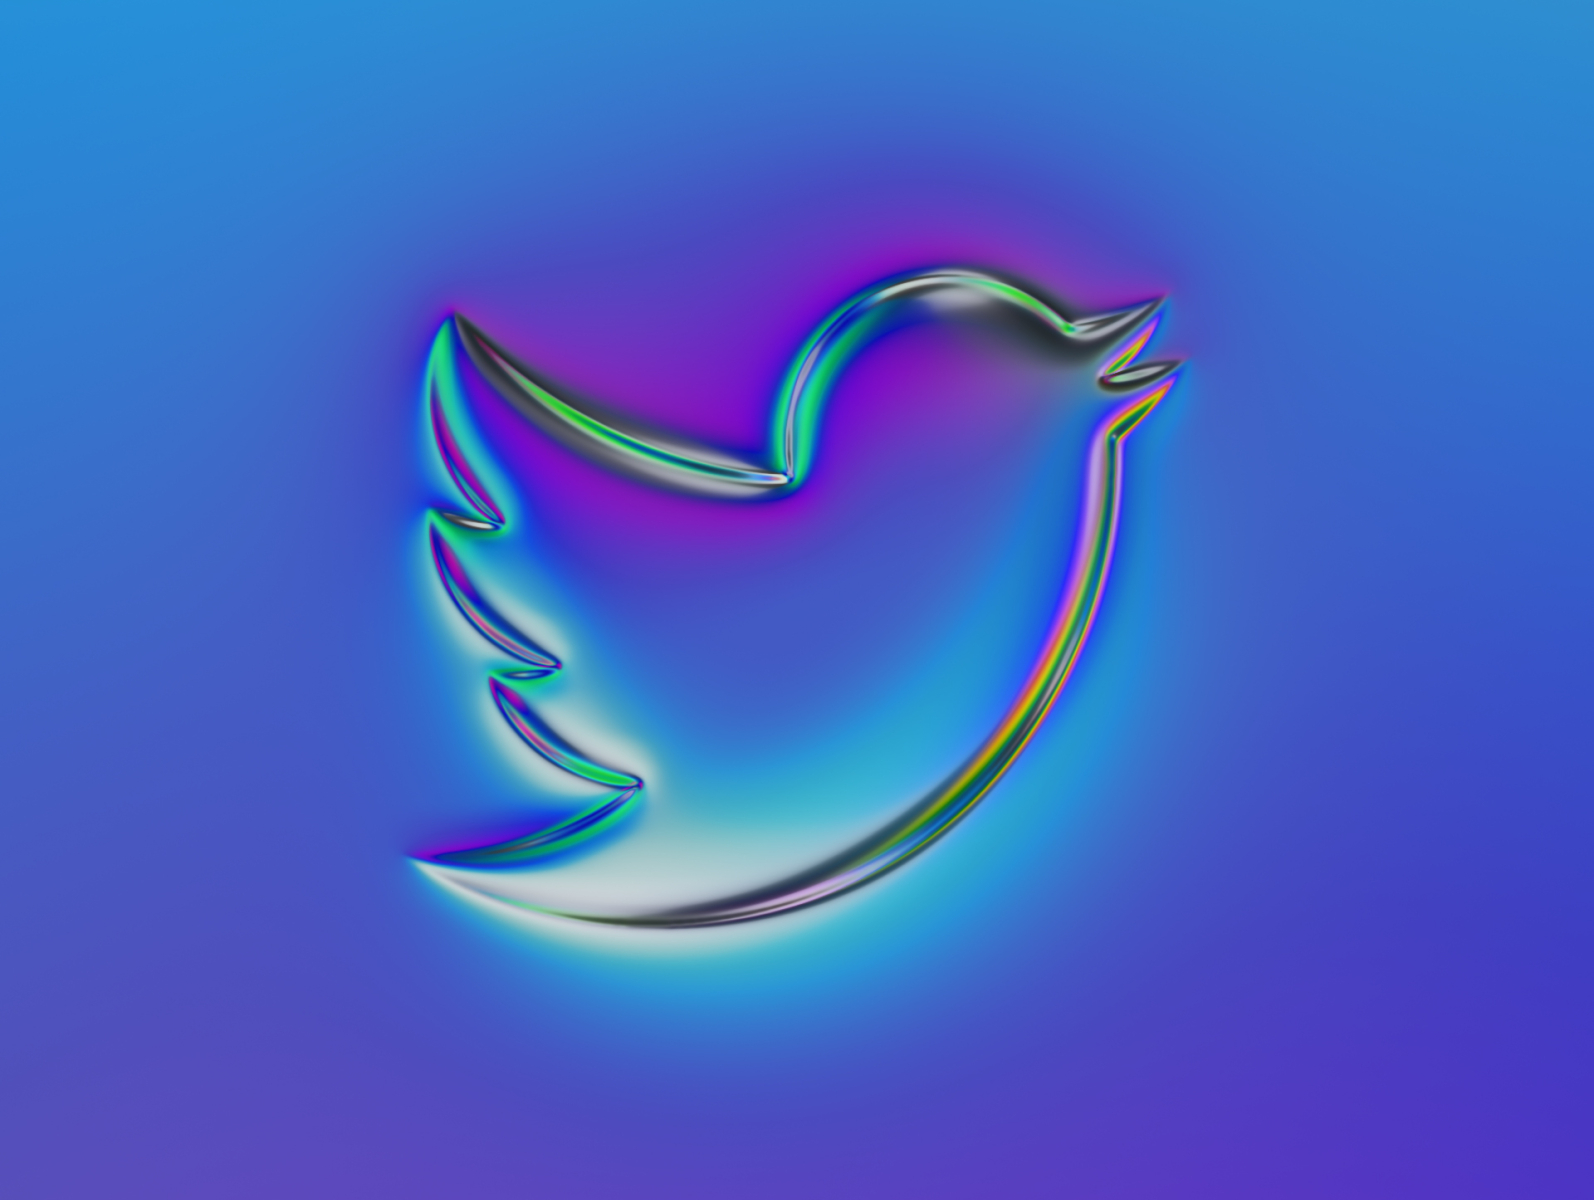 36 logos - Twitter twitter icon chrome blue rebranding rebrand logodesign twitter 36daysoftype logo branding illustration colors generative filter forge abstract art design